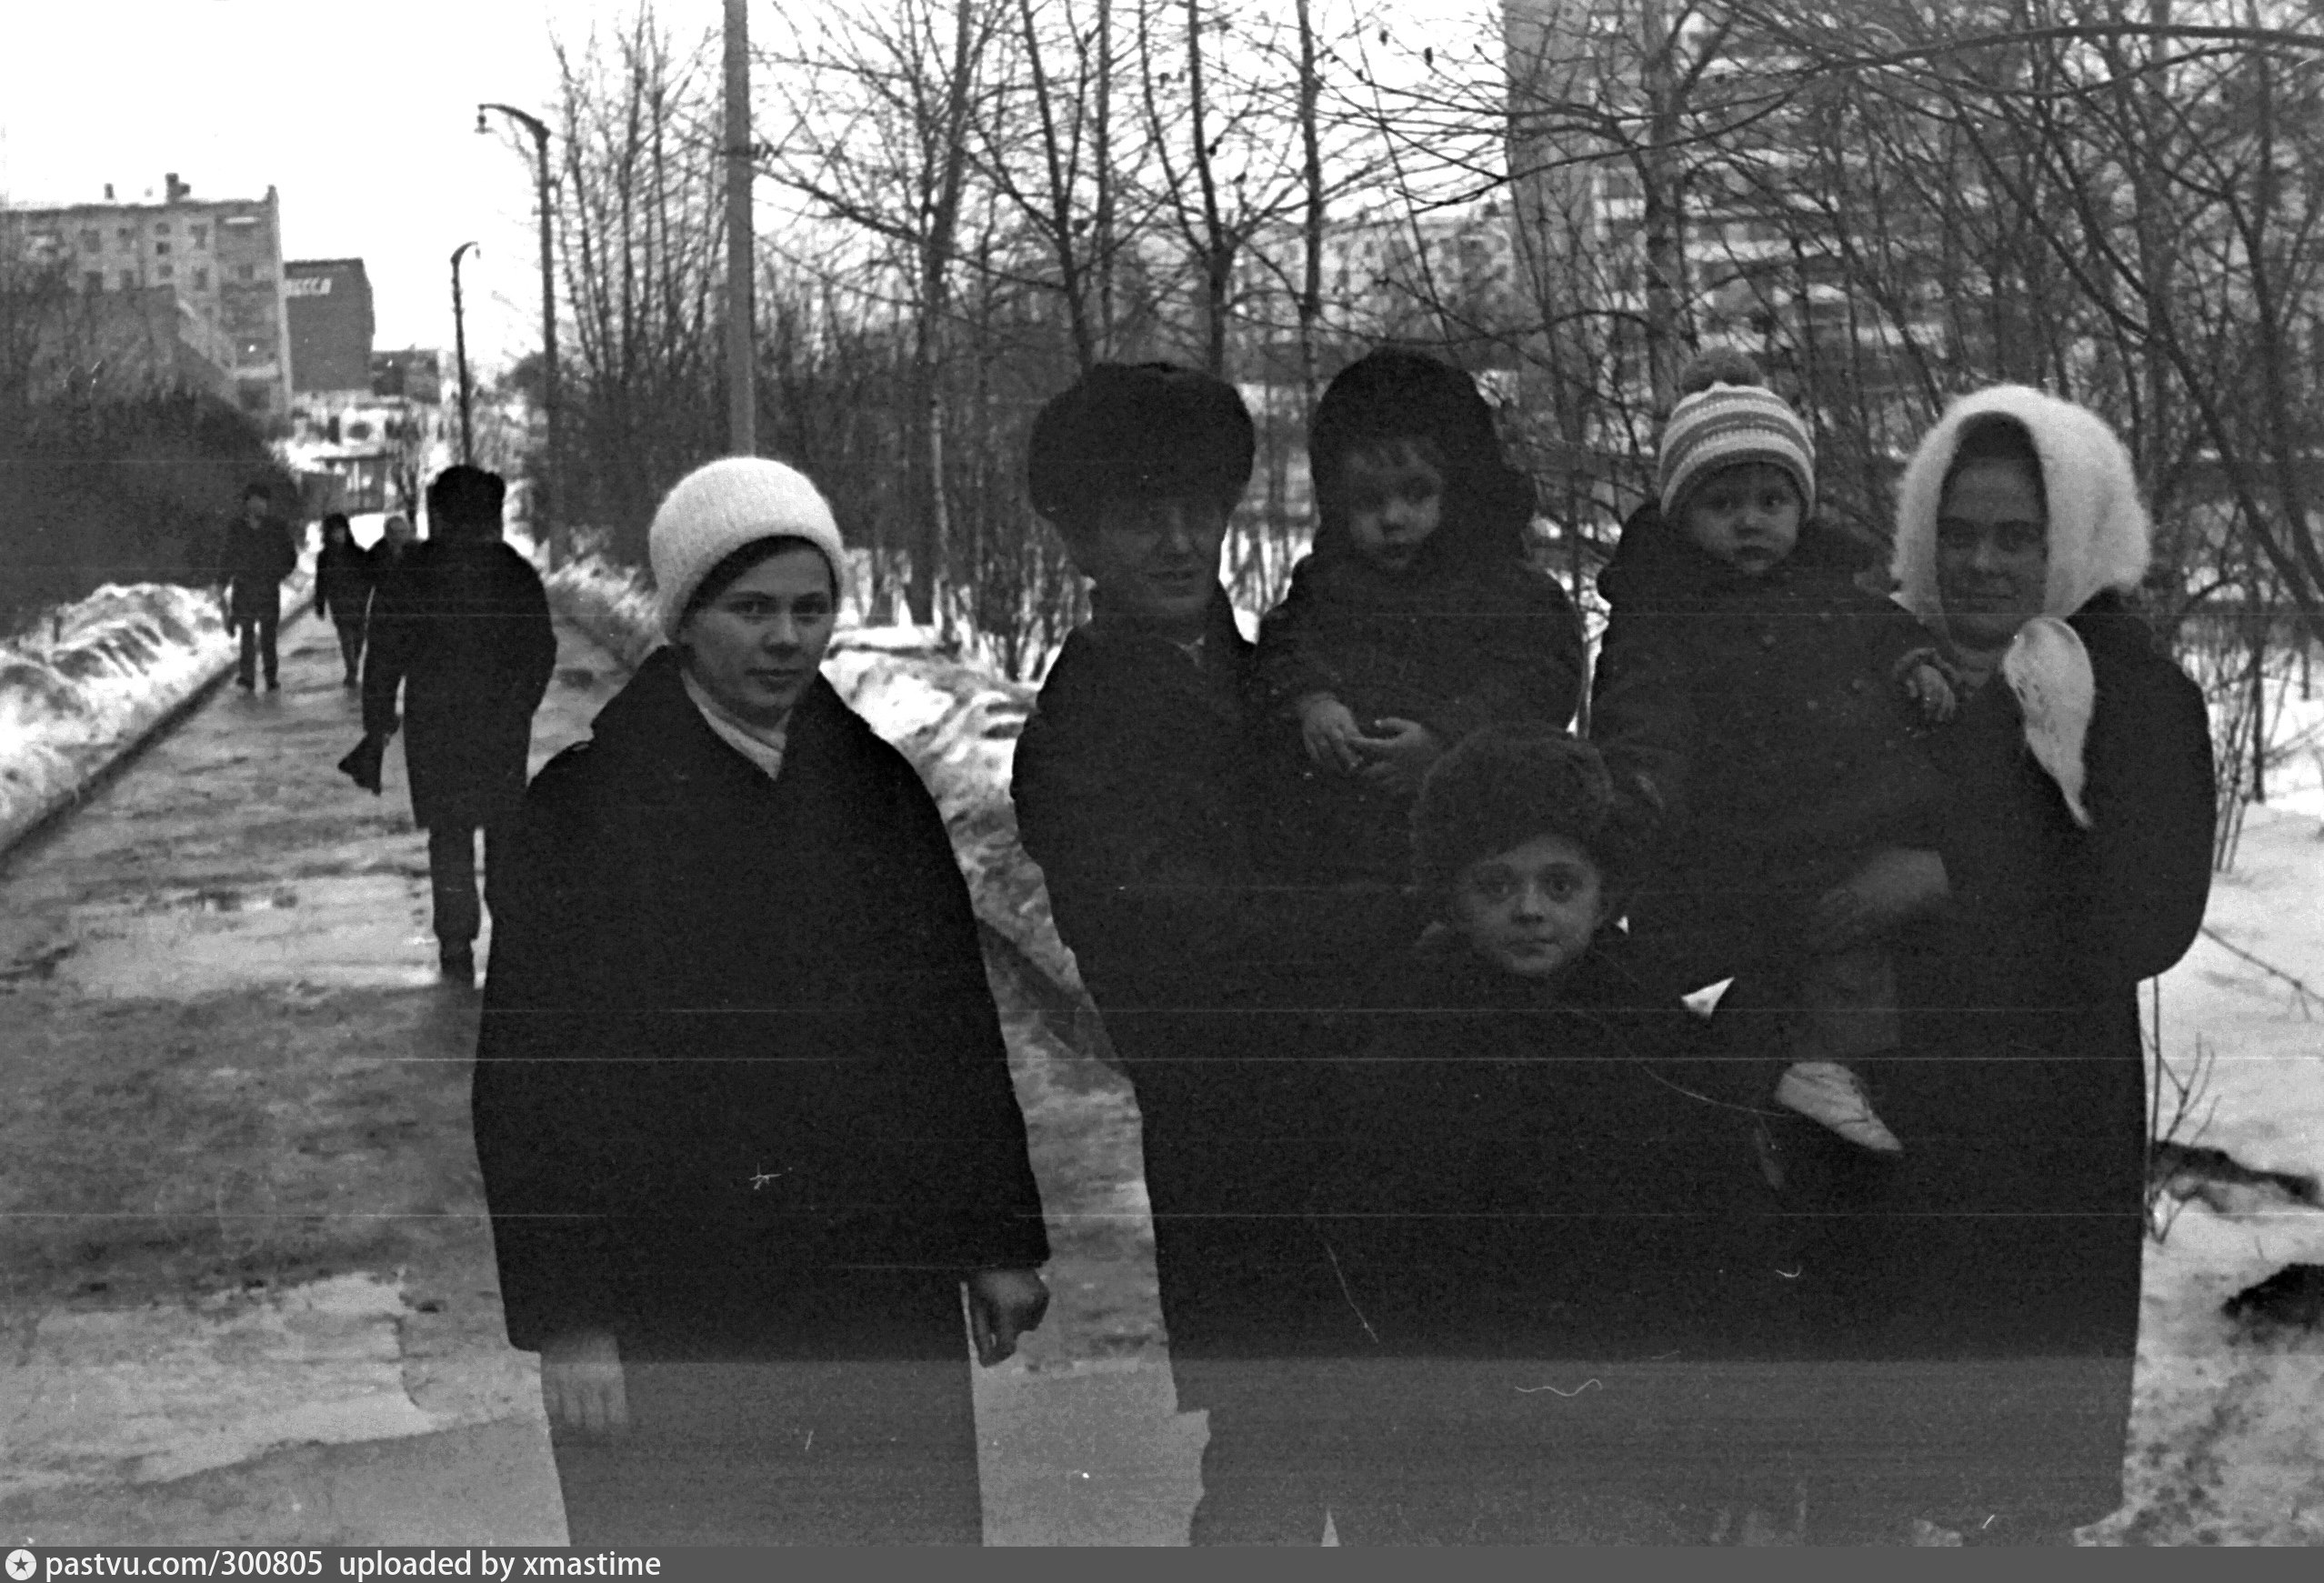 Улица Каховка фото 1986 год. Старое фото Зюзино в Москве. Улица Каховка фото 70 годы. Улица Каховка архивные фото. Каховка зюзино